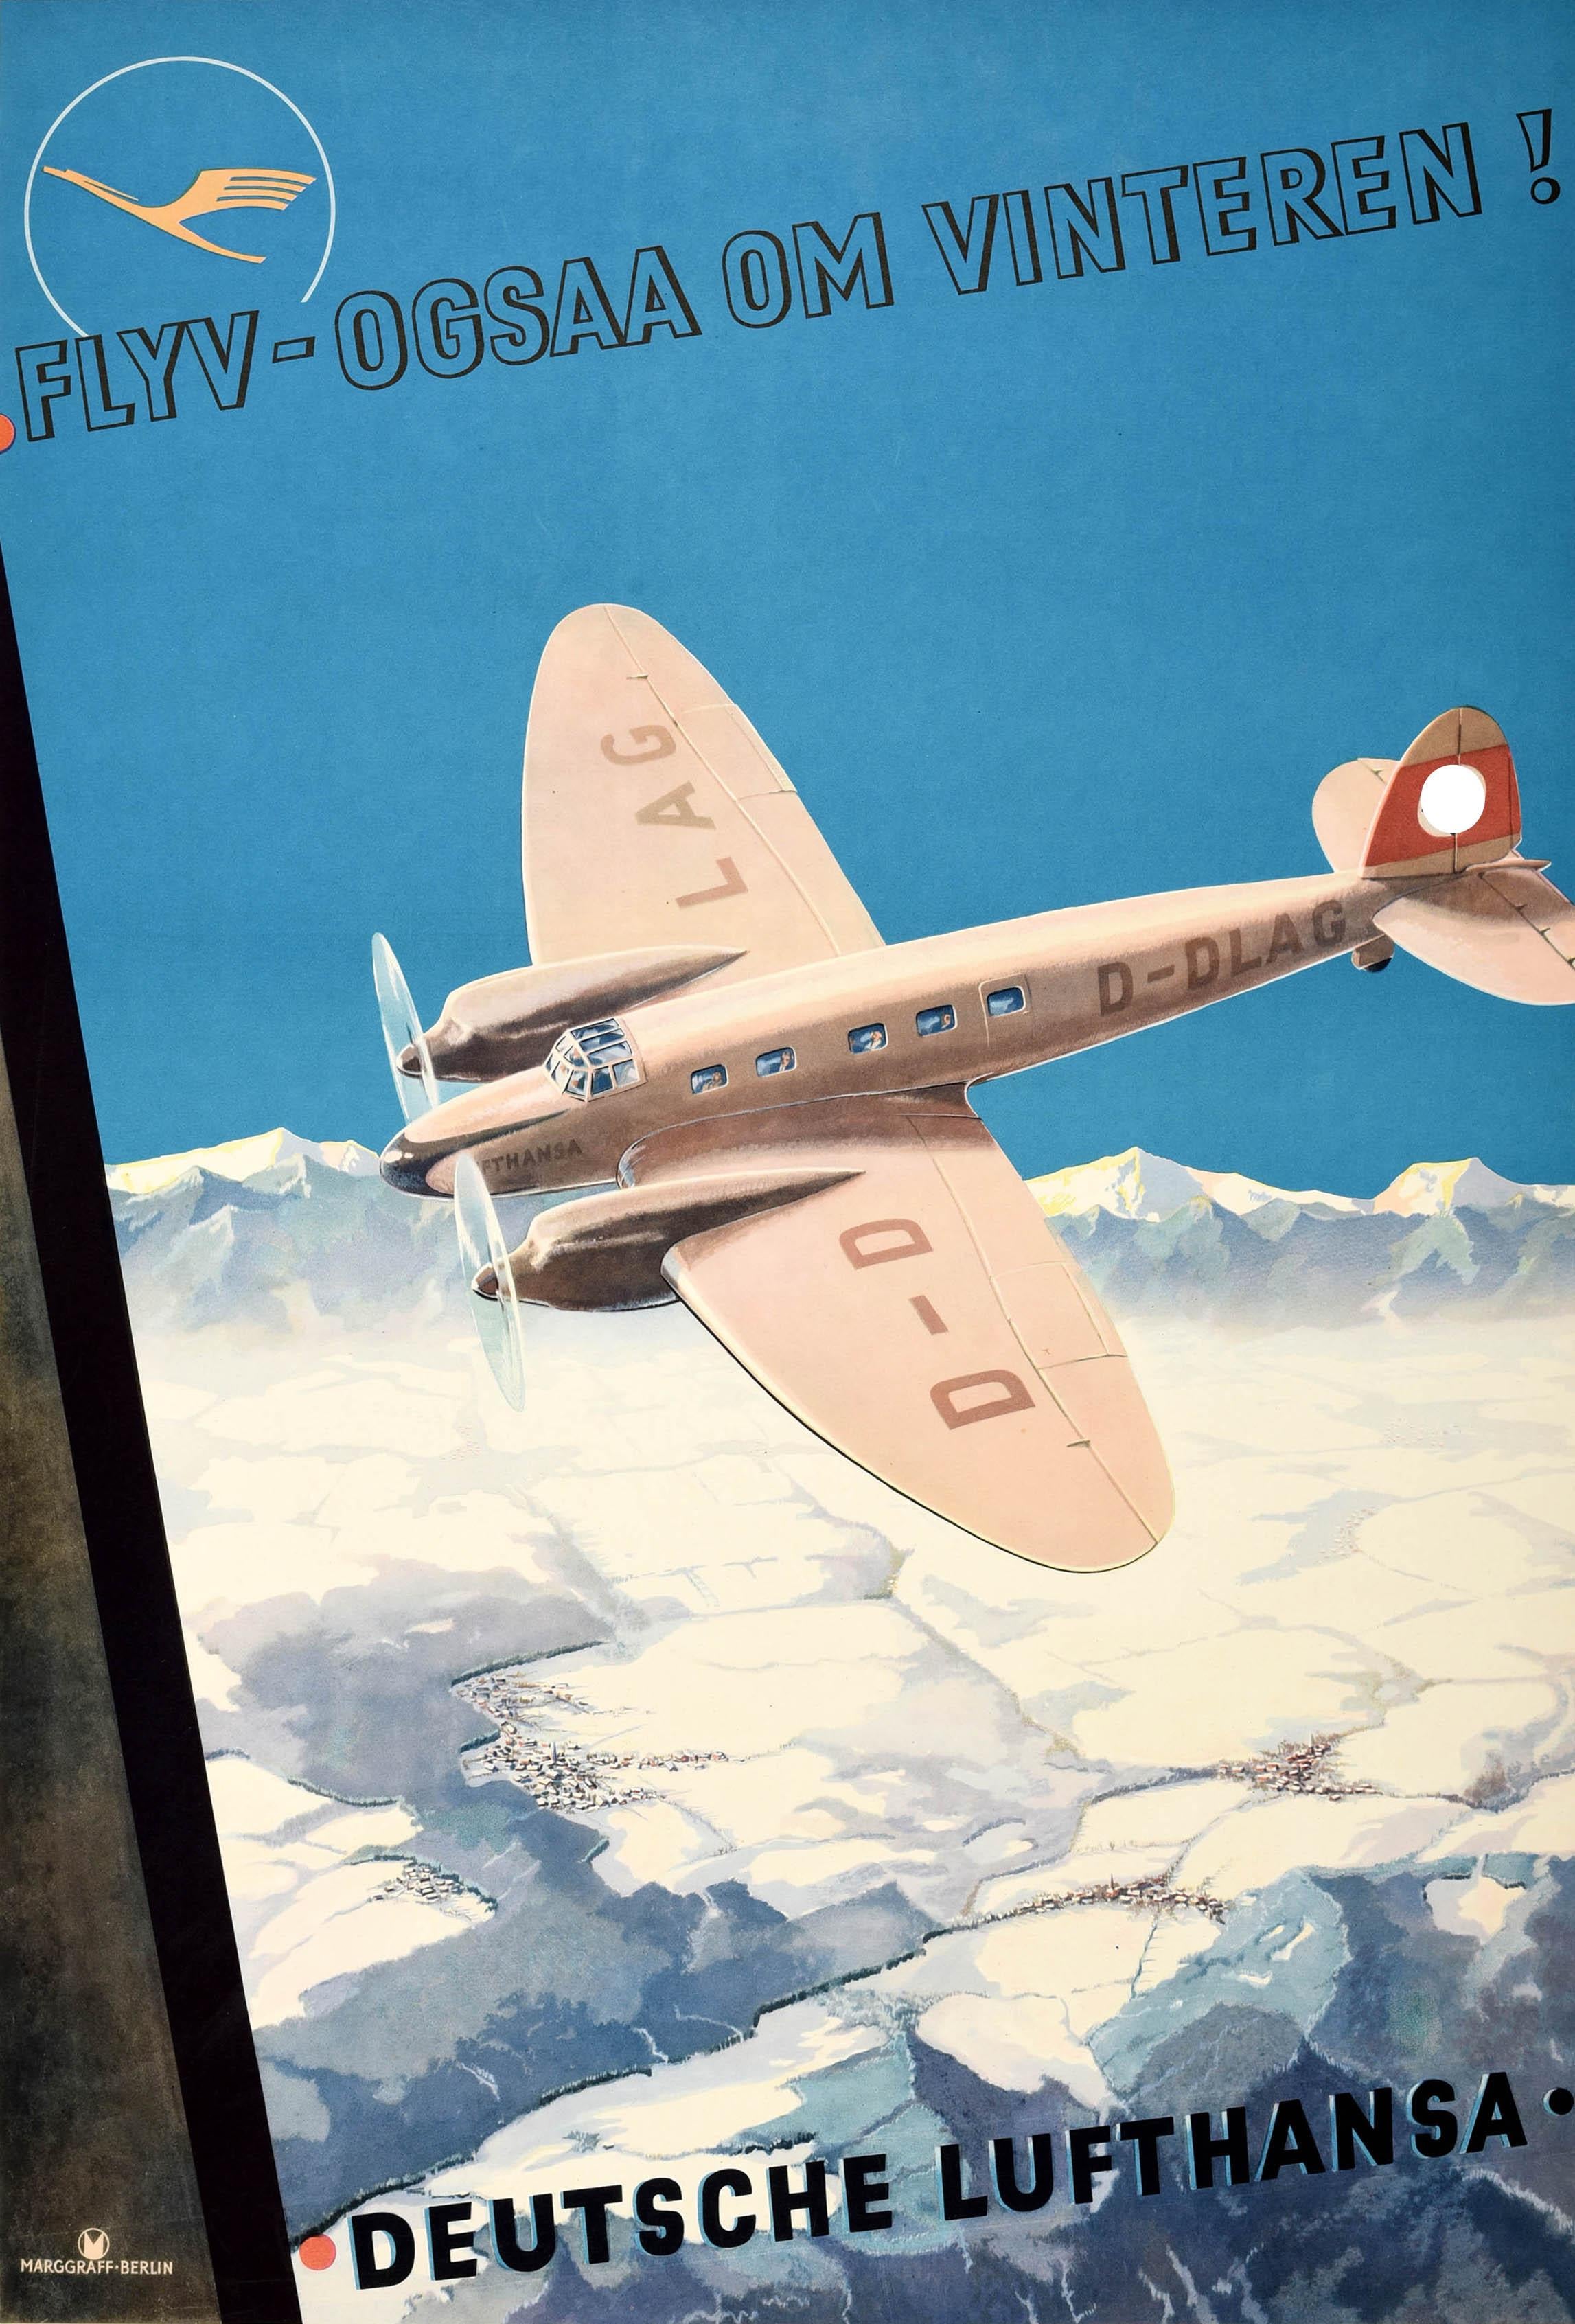 Affiche de voyage originale de la Deutsche Lufthansa Fly Also In Winter / Flyv-Ogsaa Om Vinteren ! Superbe illustration représentant une vue depuis le hublot d'un avion sur des champs enneigés et des montagnes enneigées à l'horizon, avec un avion à